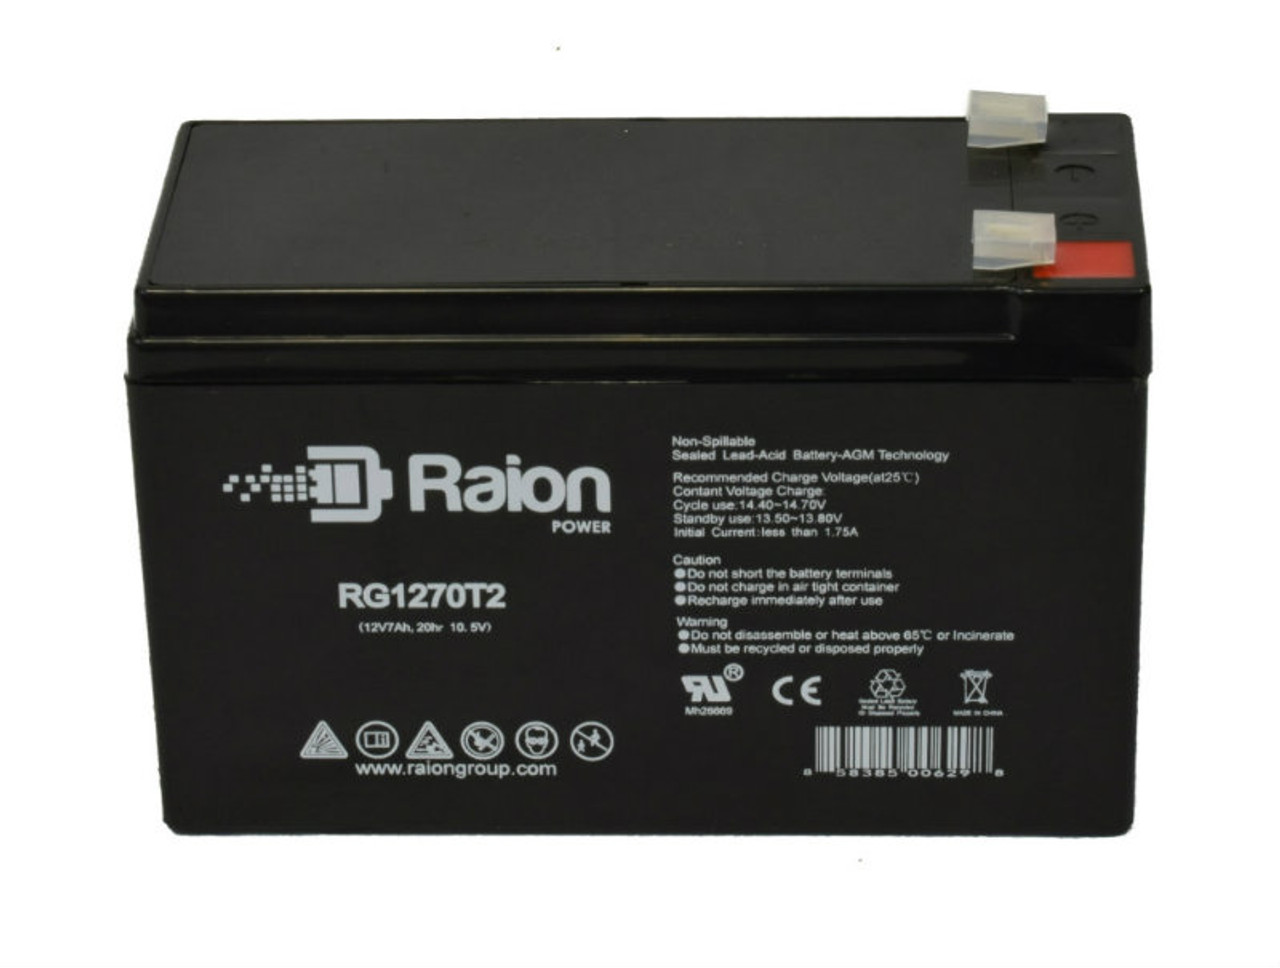 Raion Power RG1270T2 12V 7Ah Lead Acid Battery for Kinghero SJ12V7.2Ah